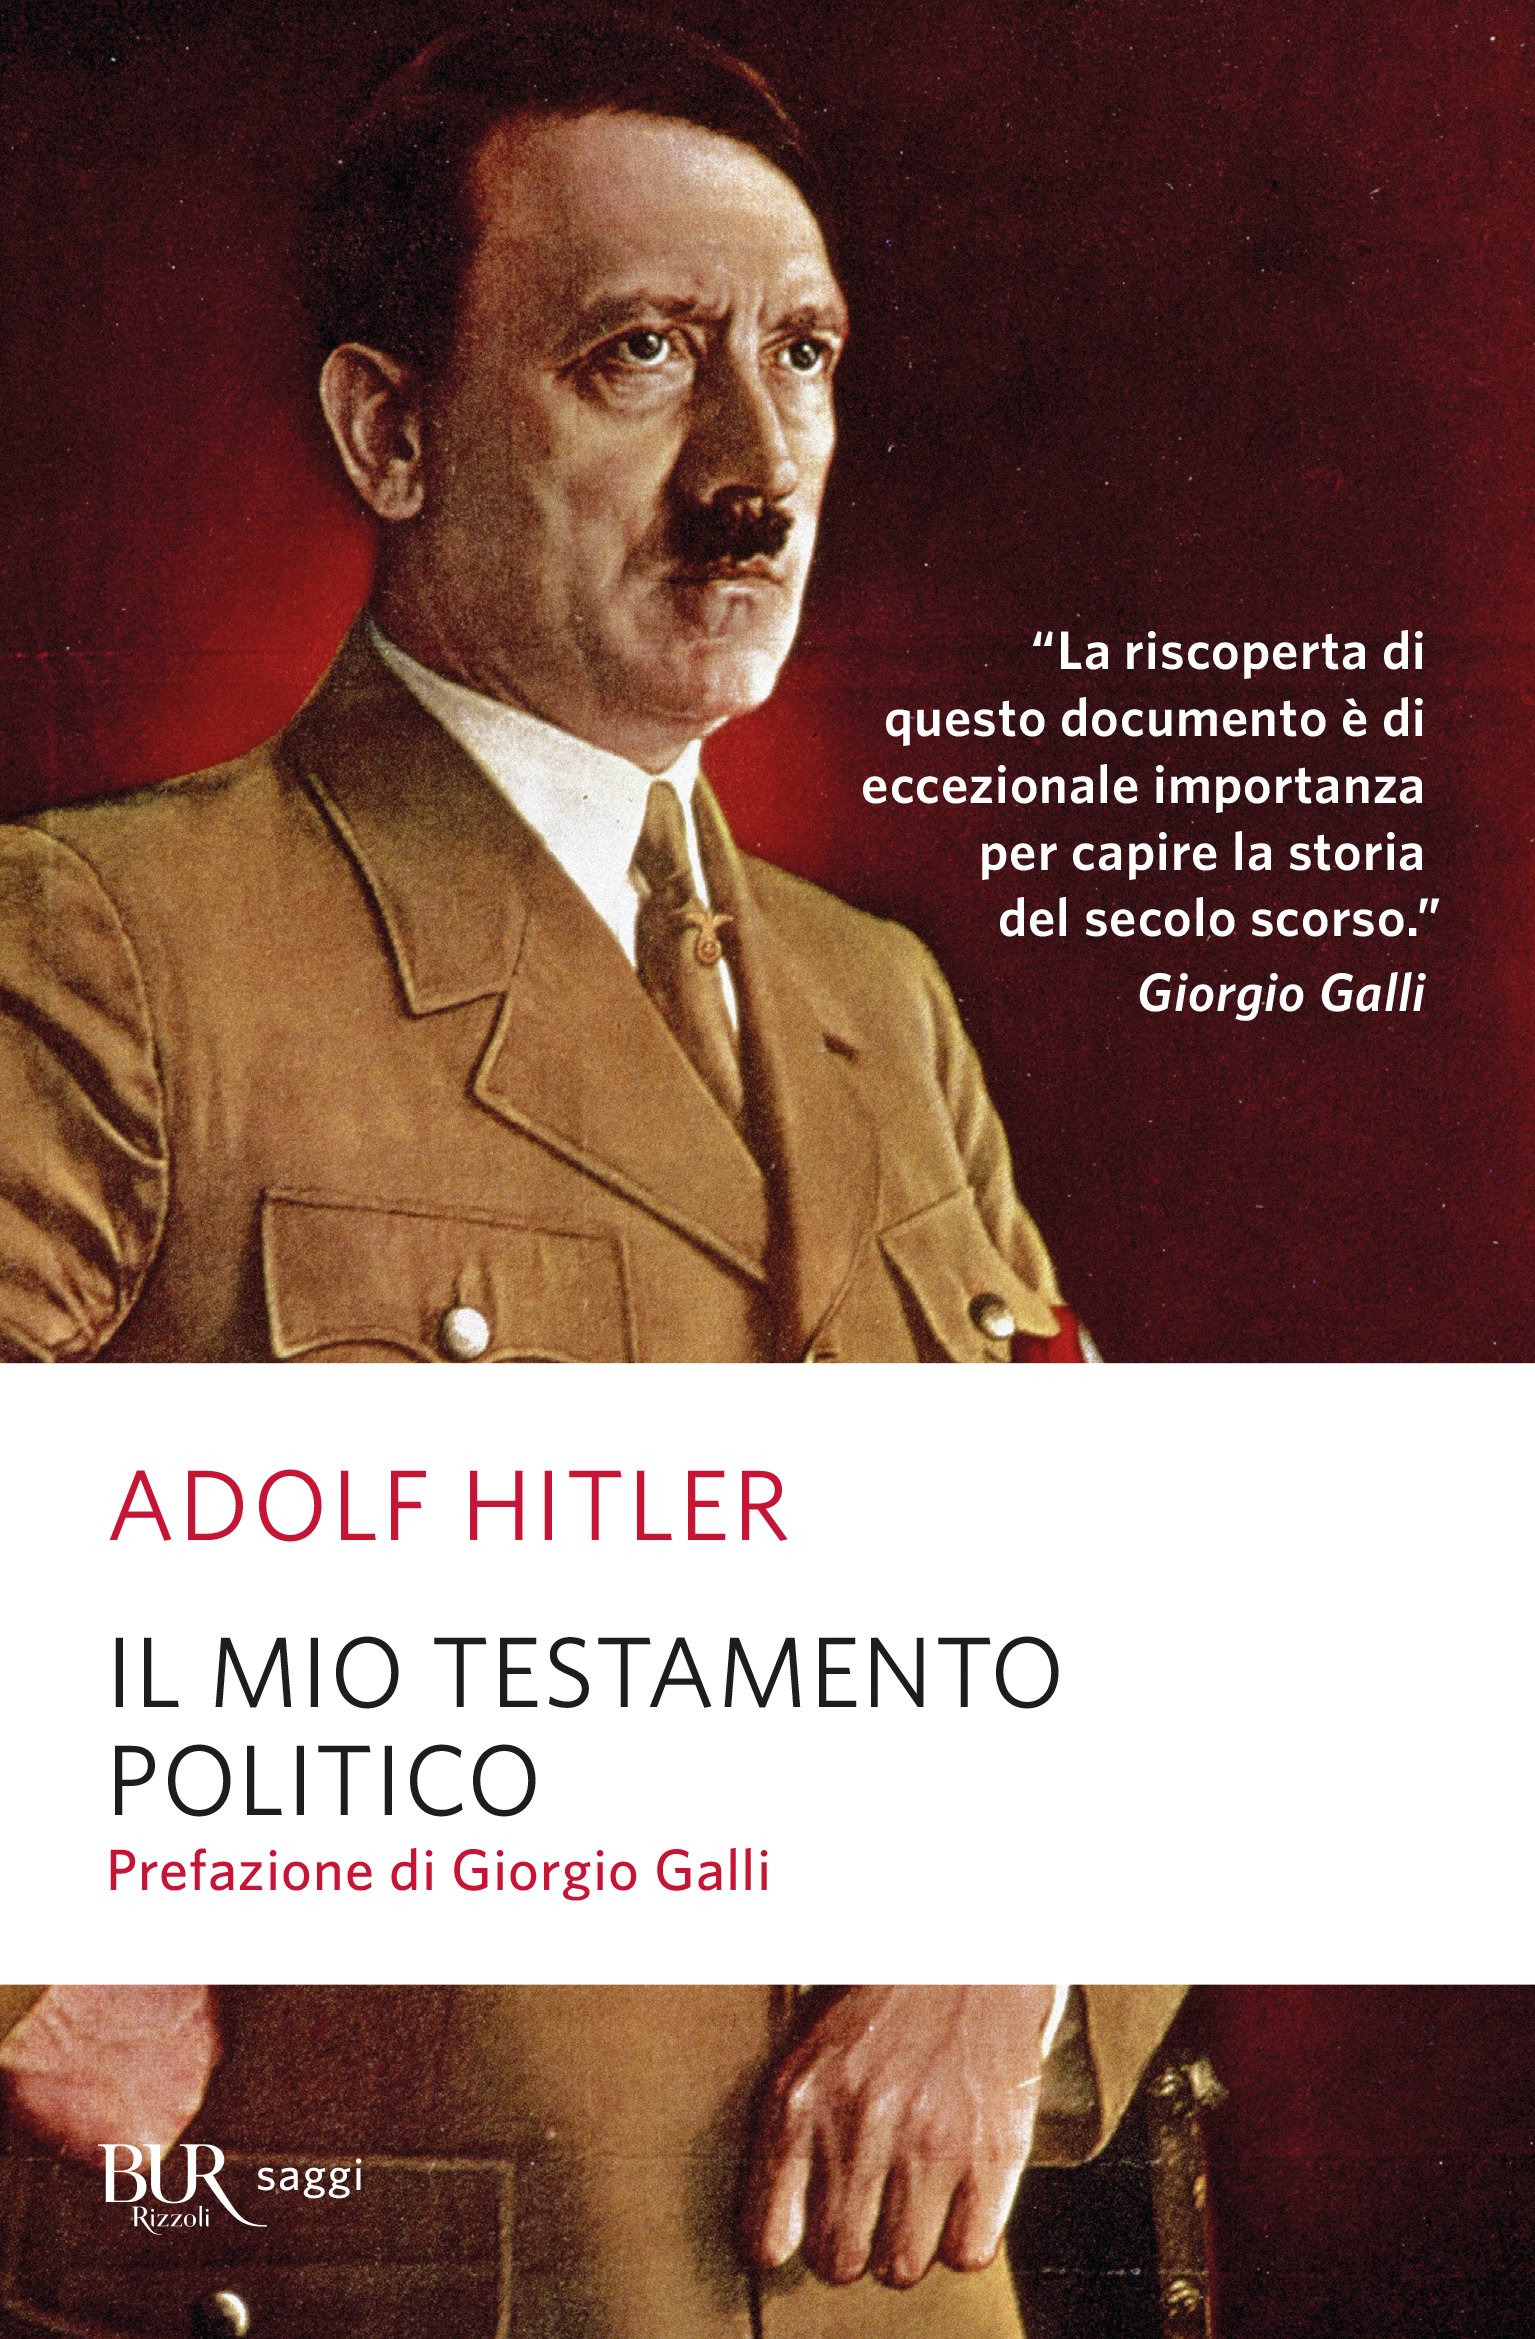 Il testamento politico di Adolf Hitler